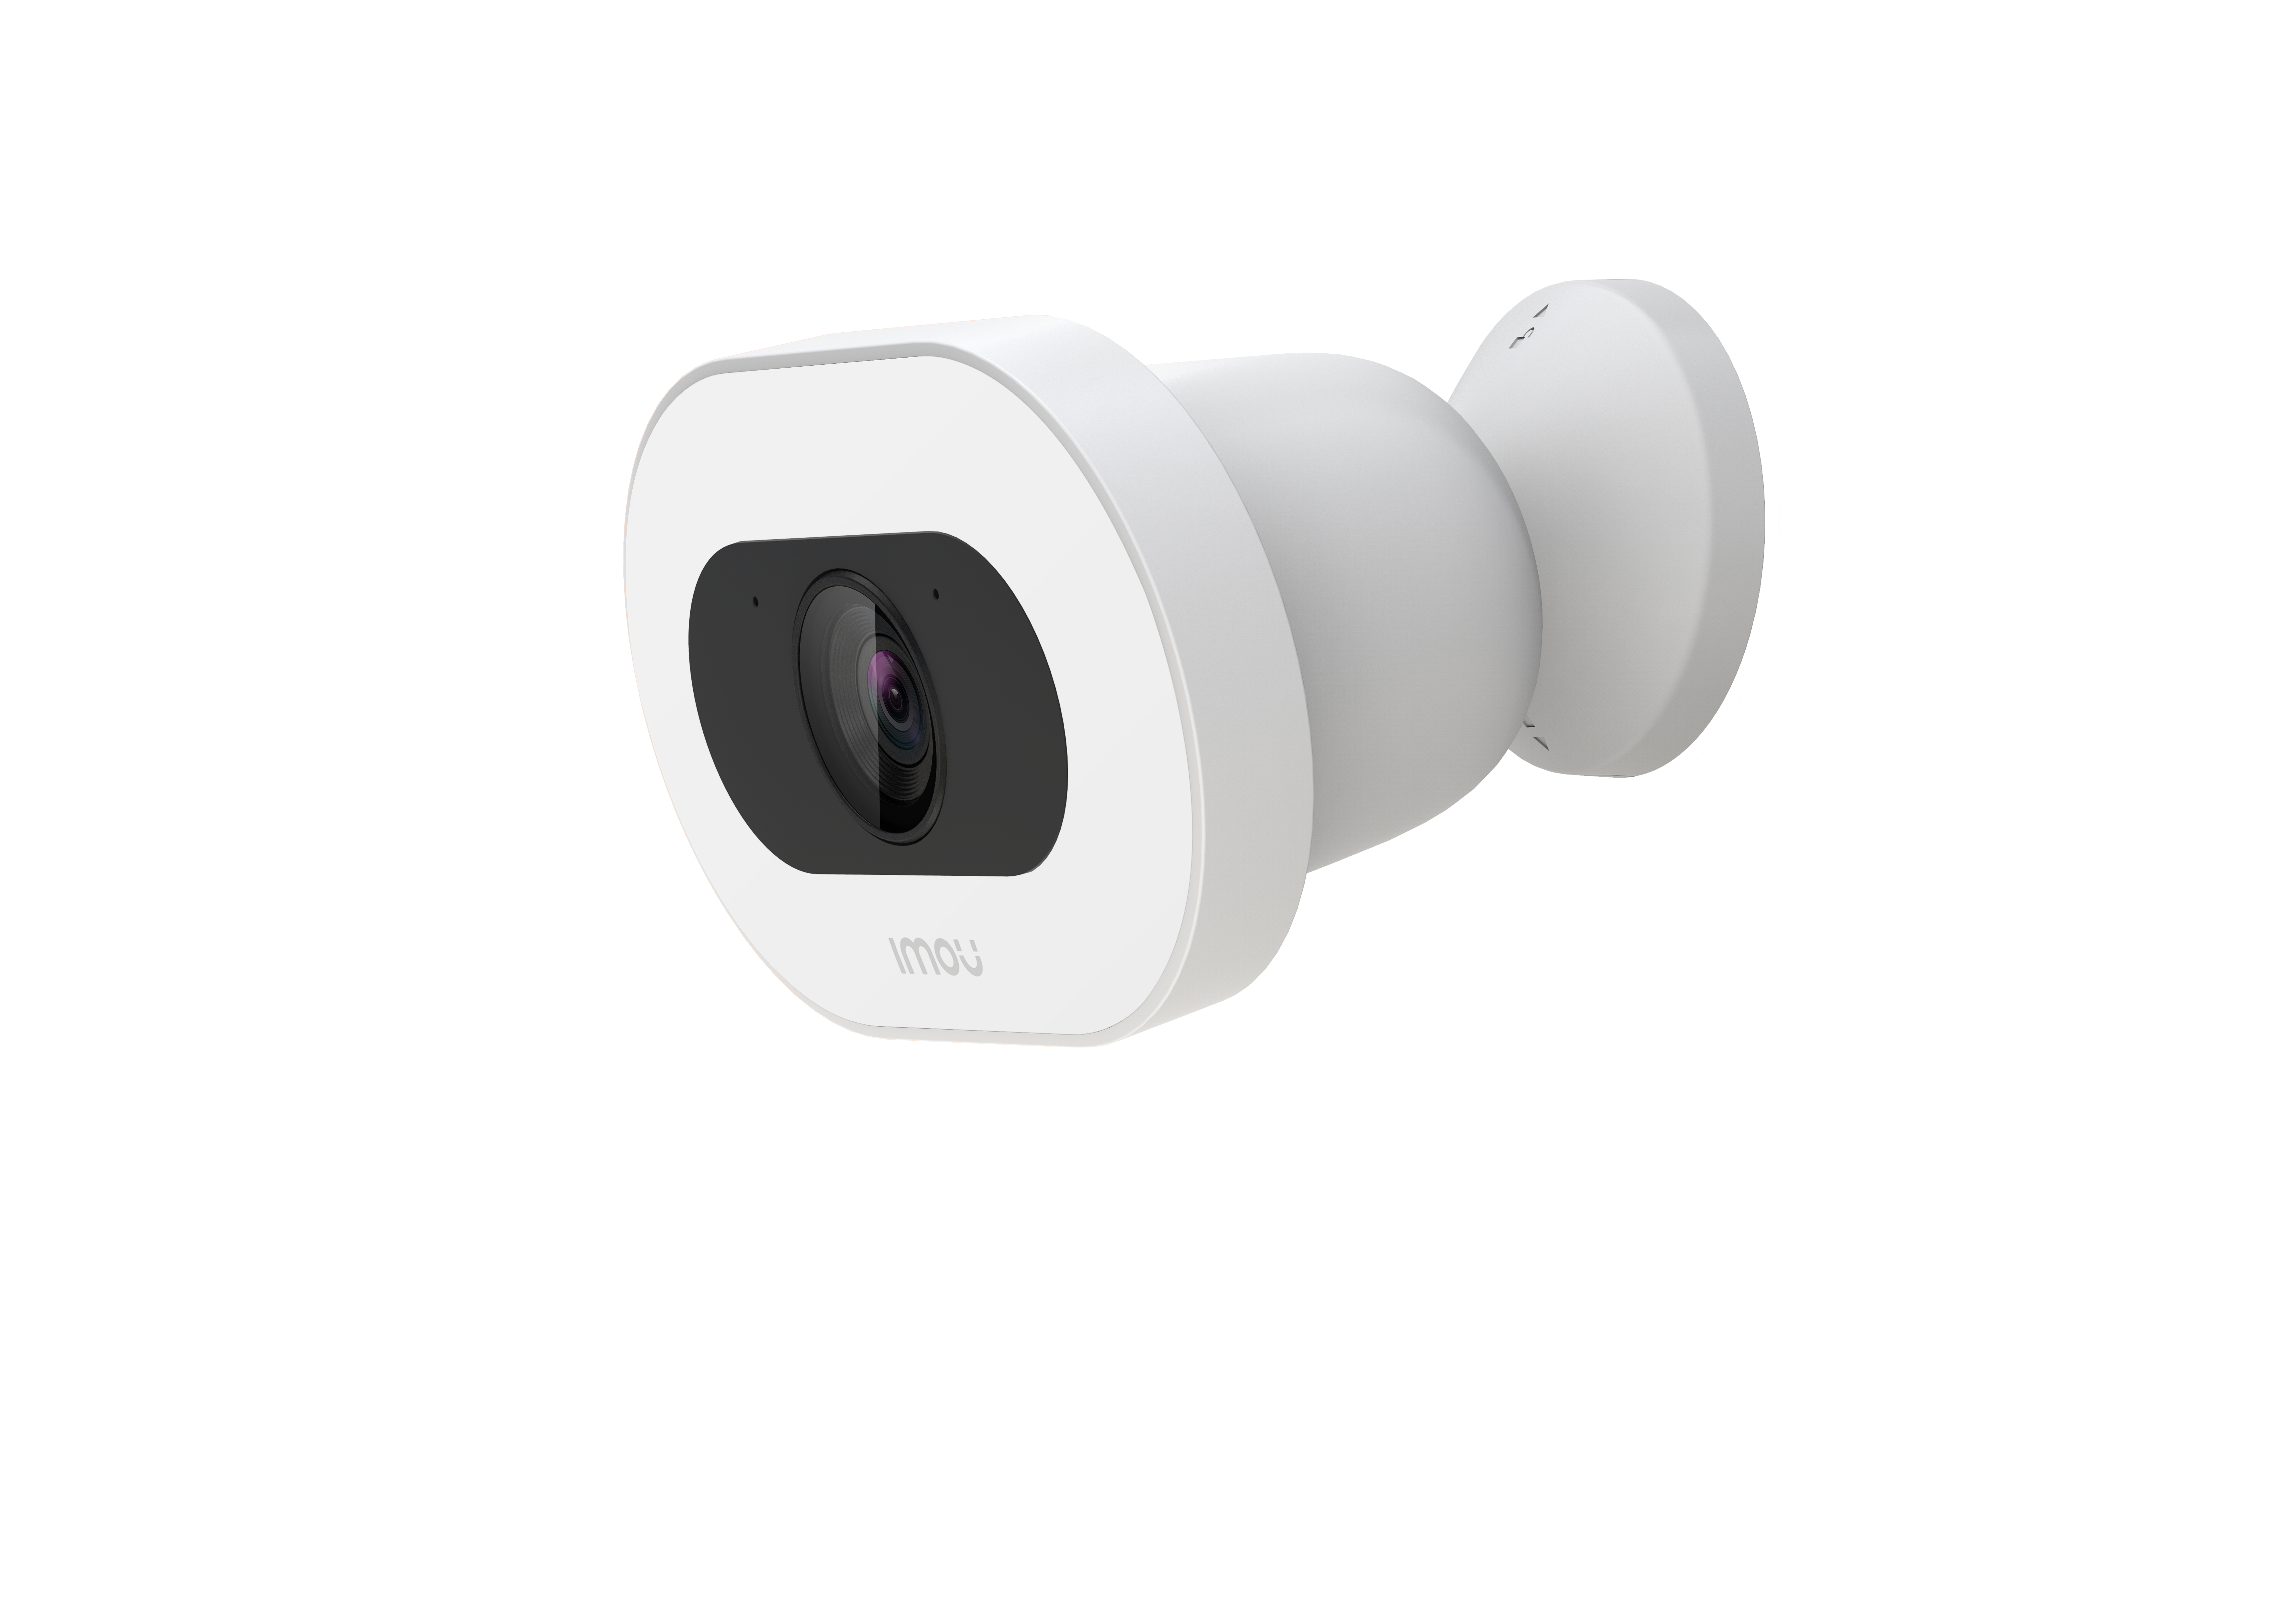 Image of Imou Knight Telecamera 4K (8MP) Wi-Fi da esterno con sirena e faretto